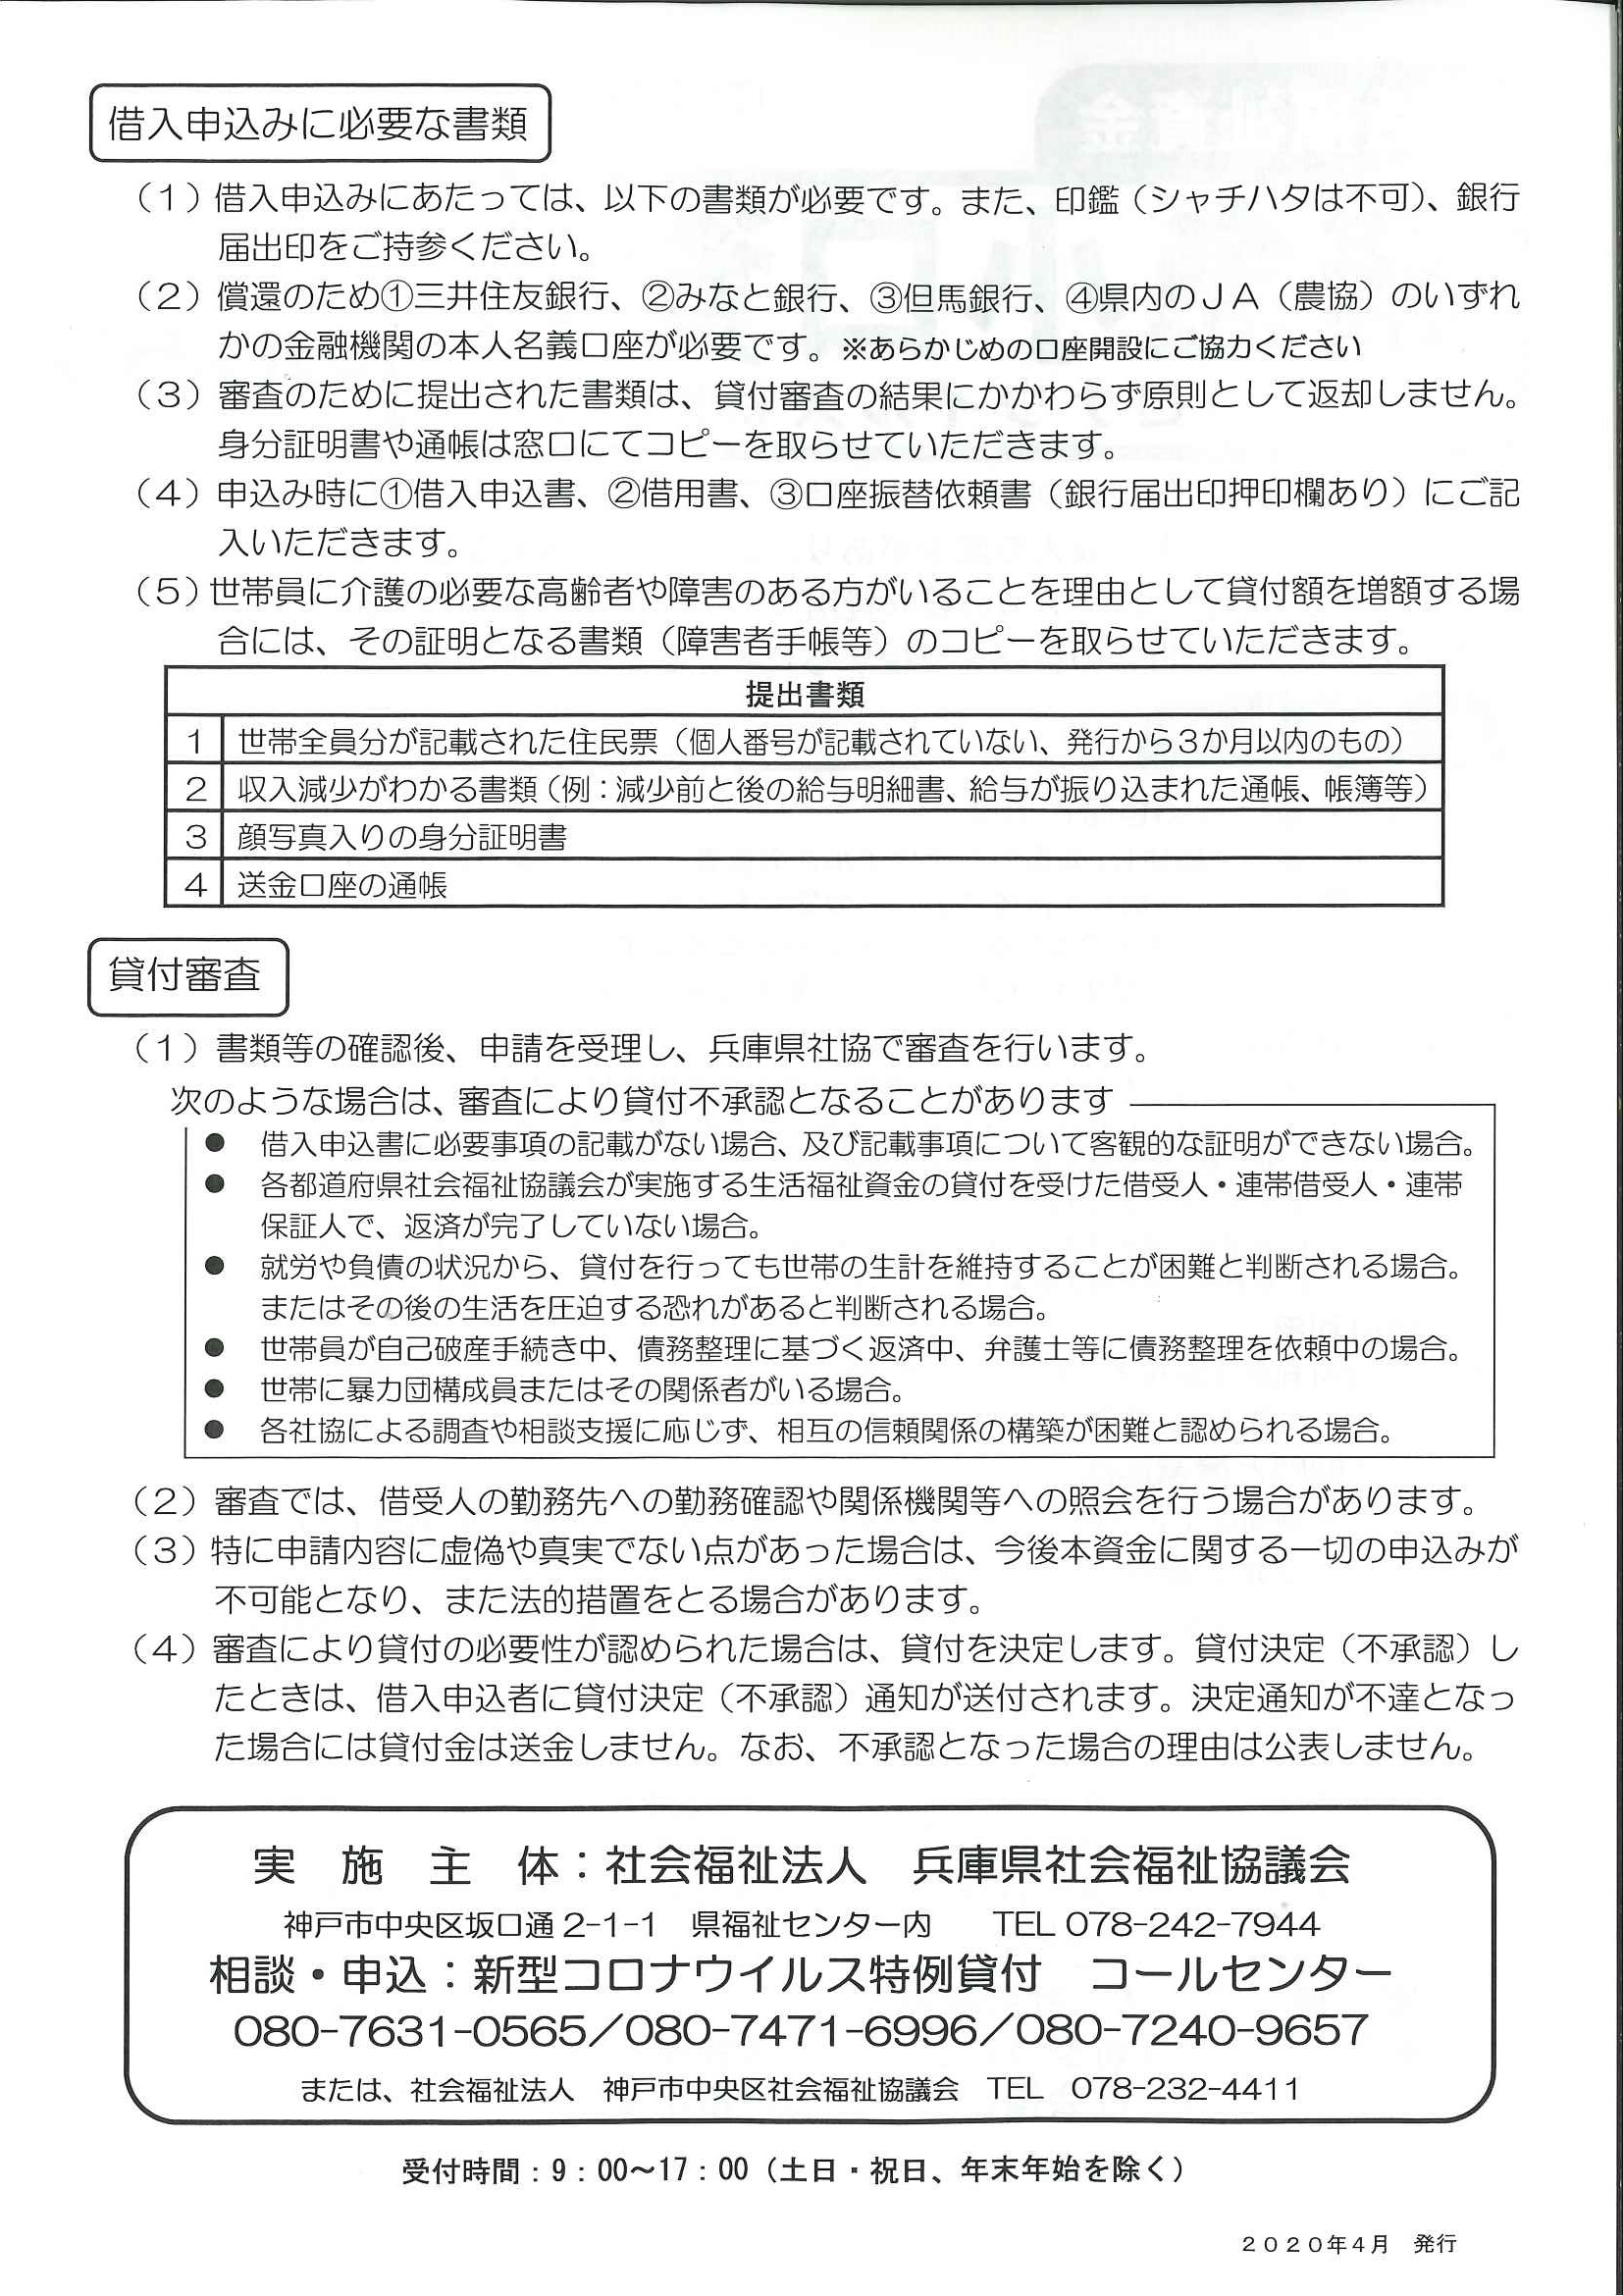 新型コロナウイルス 緊急小口資金について 改訂 神戸市中央区社会福祉協議会